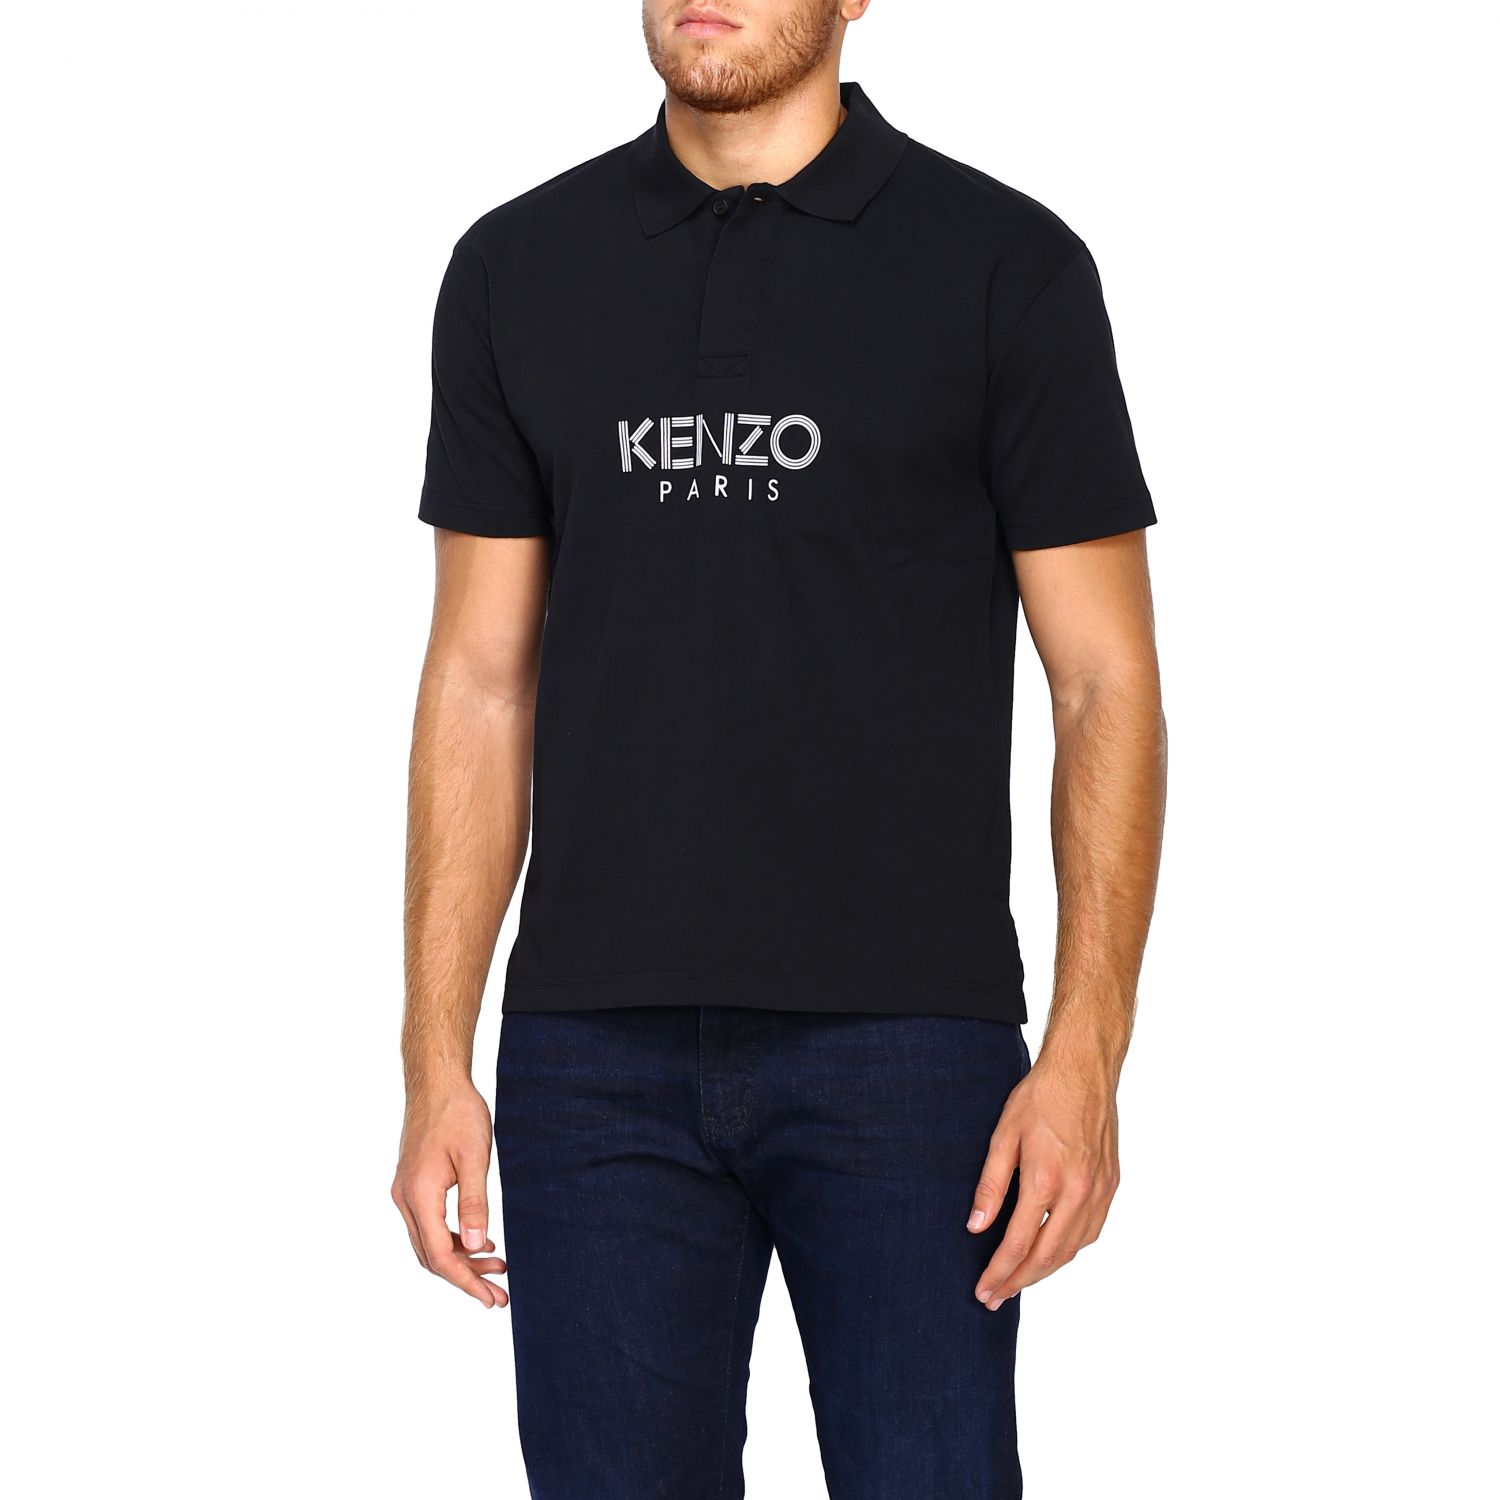 kenzo black polo shirt